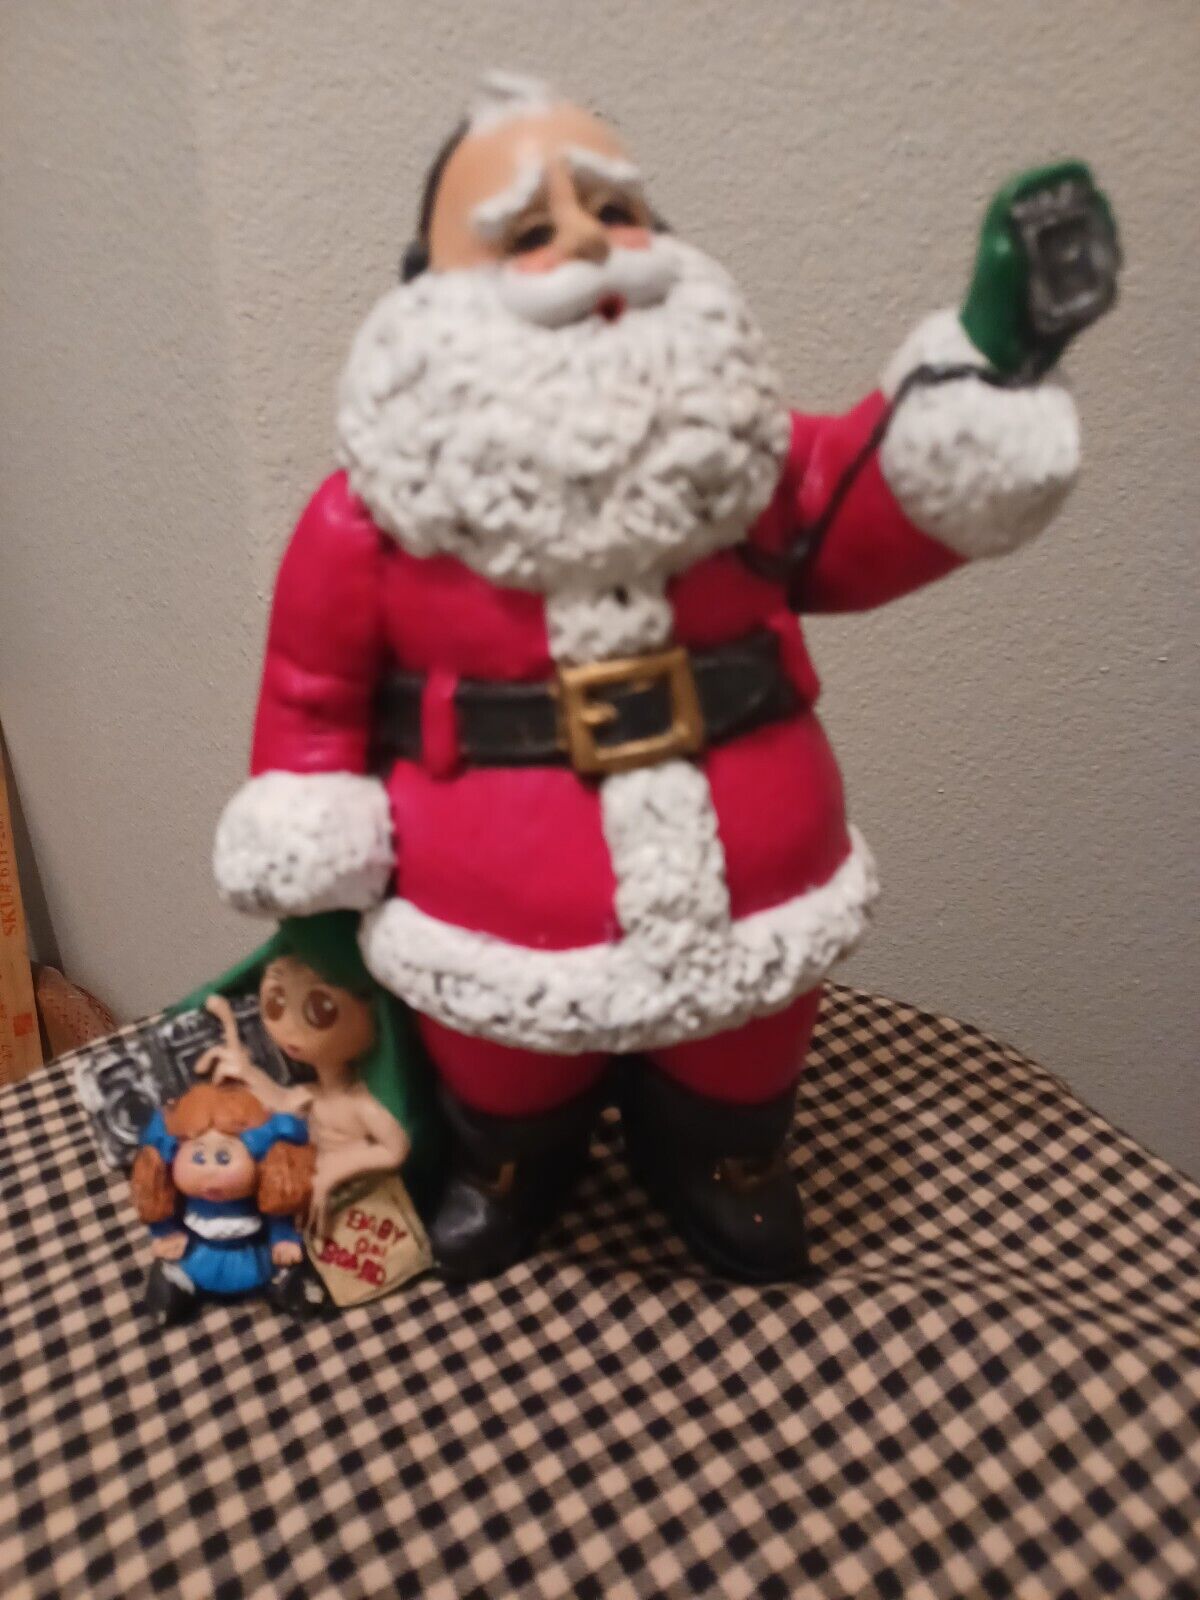 Vtg 1980's Trend Santa Claus Figurine ET Cabbage Patch Doll Christmas  Decor HM